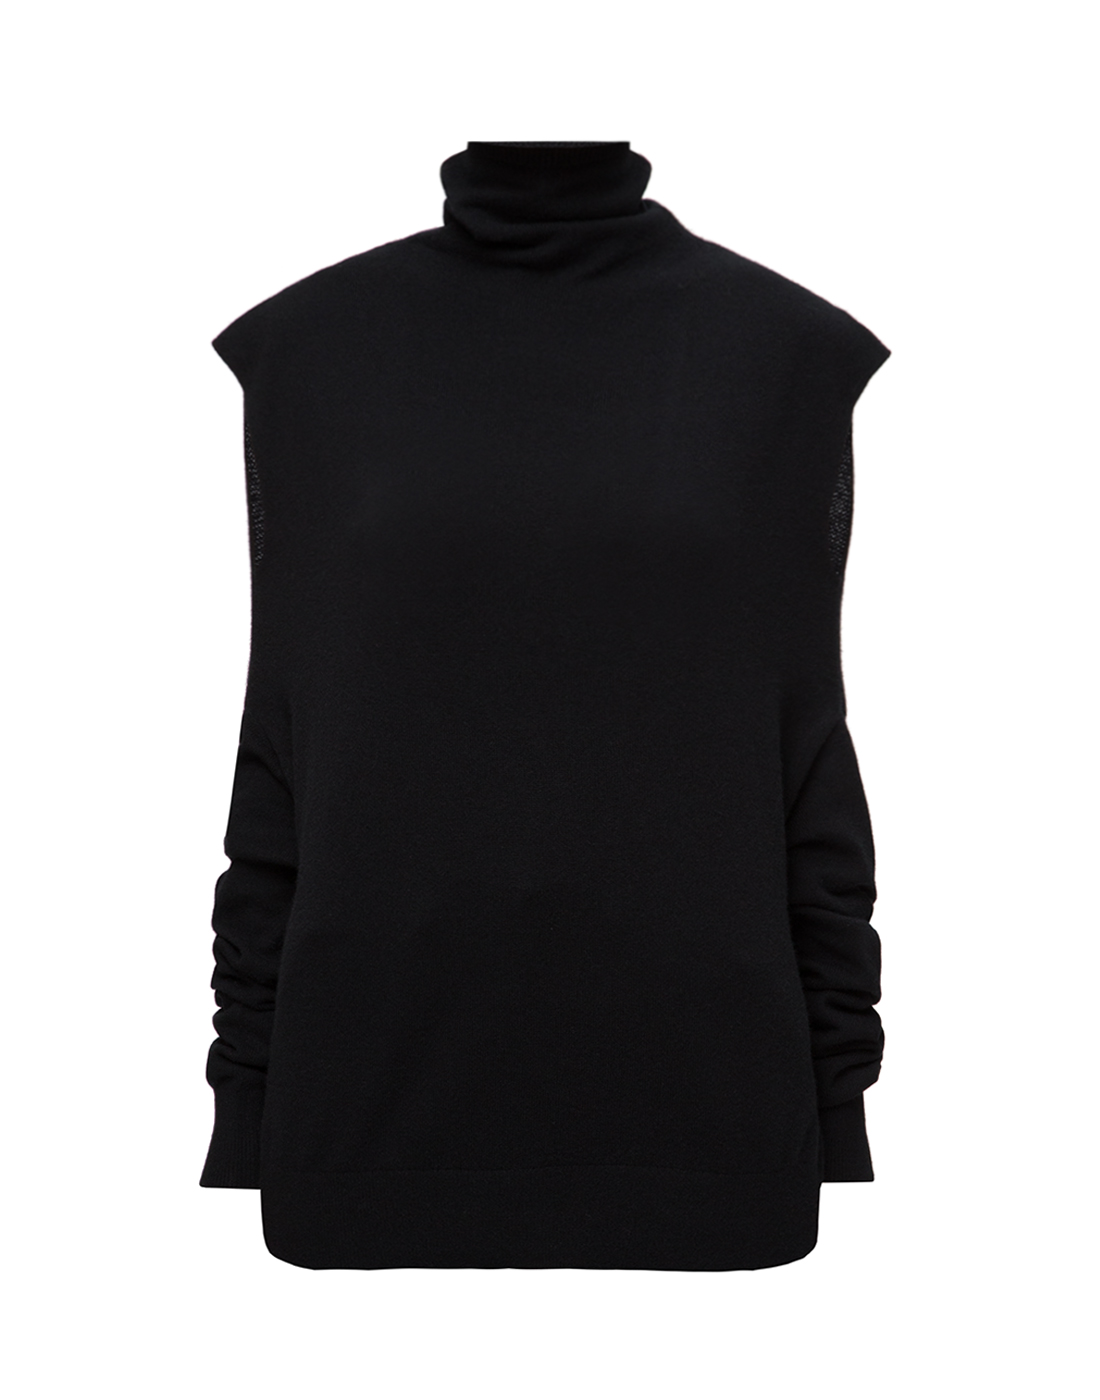 Женский черный свитер-трансформер Dorothee Schumacher S510201/999-1